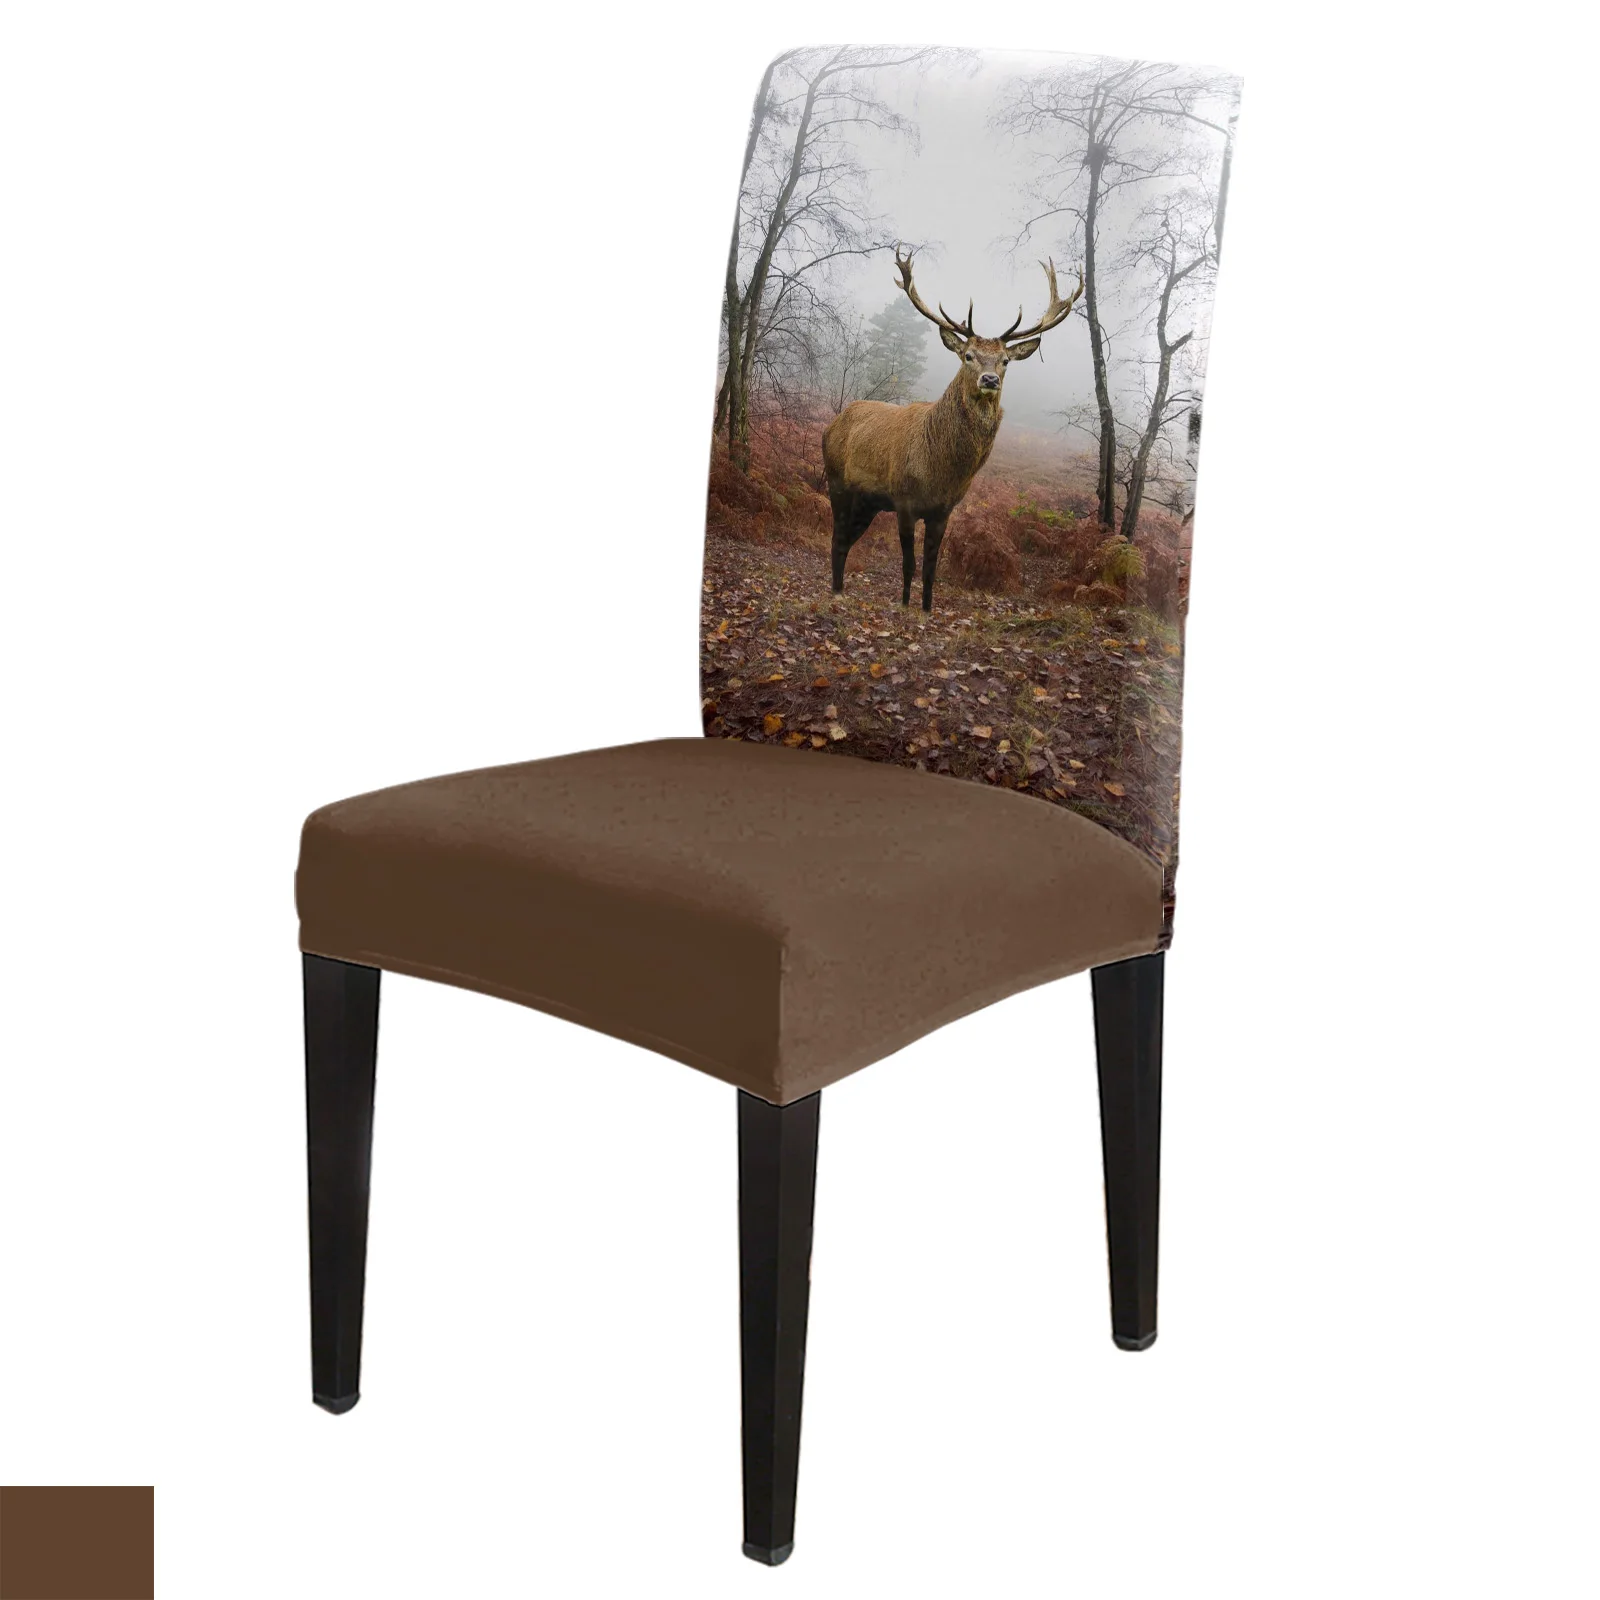 

Осенний комплект чехлов на стул с изображением леса животного оленя кухонный обеденный эластичный чехол из спандекса для банкета свадебной вечеринки